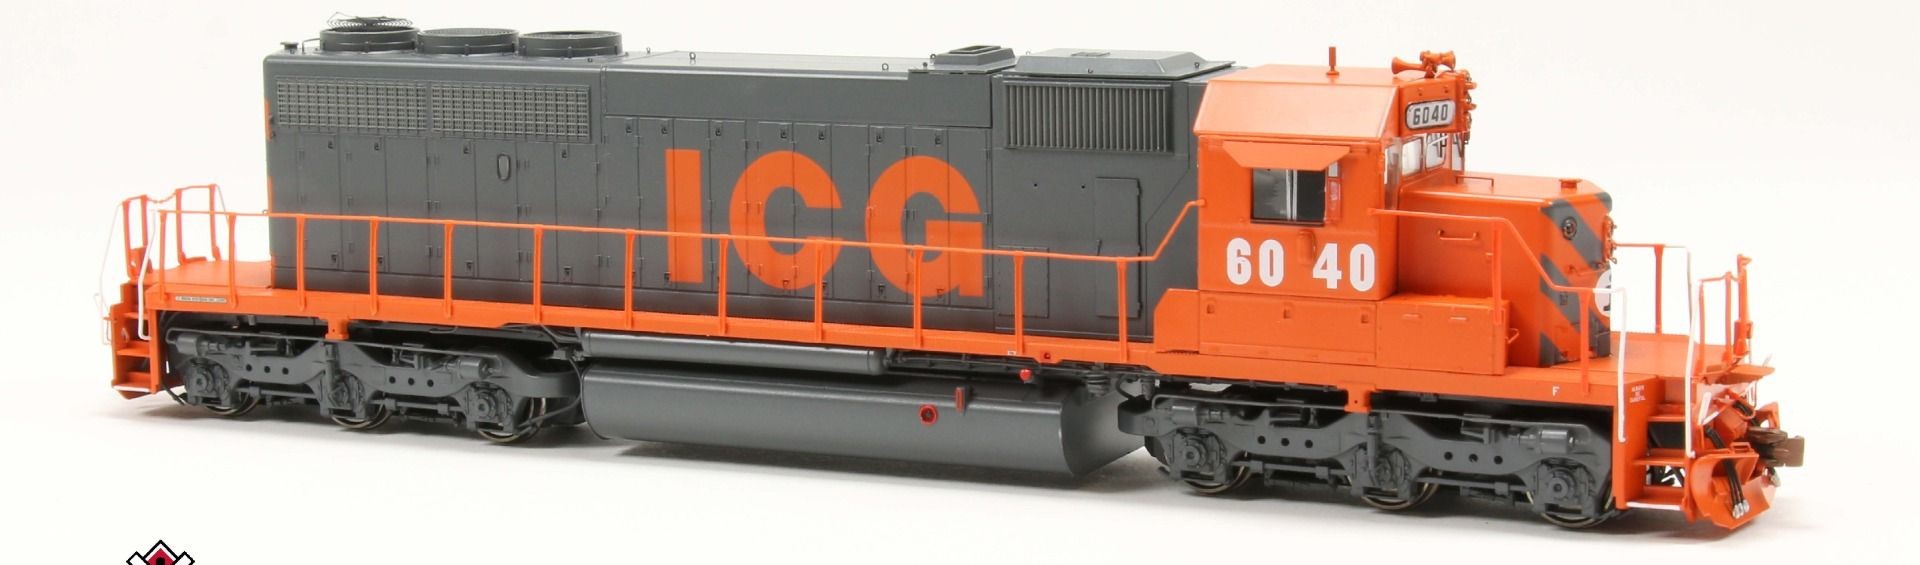 ScaleTrains Rivet Counter HO SXT38813 DCC/ESU Loksound 5 Equipped EMD SD40-2 Locomotive ICG 'Orange & Gray' ICG #6049